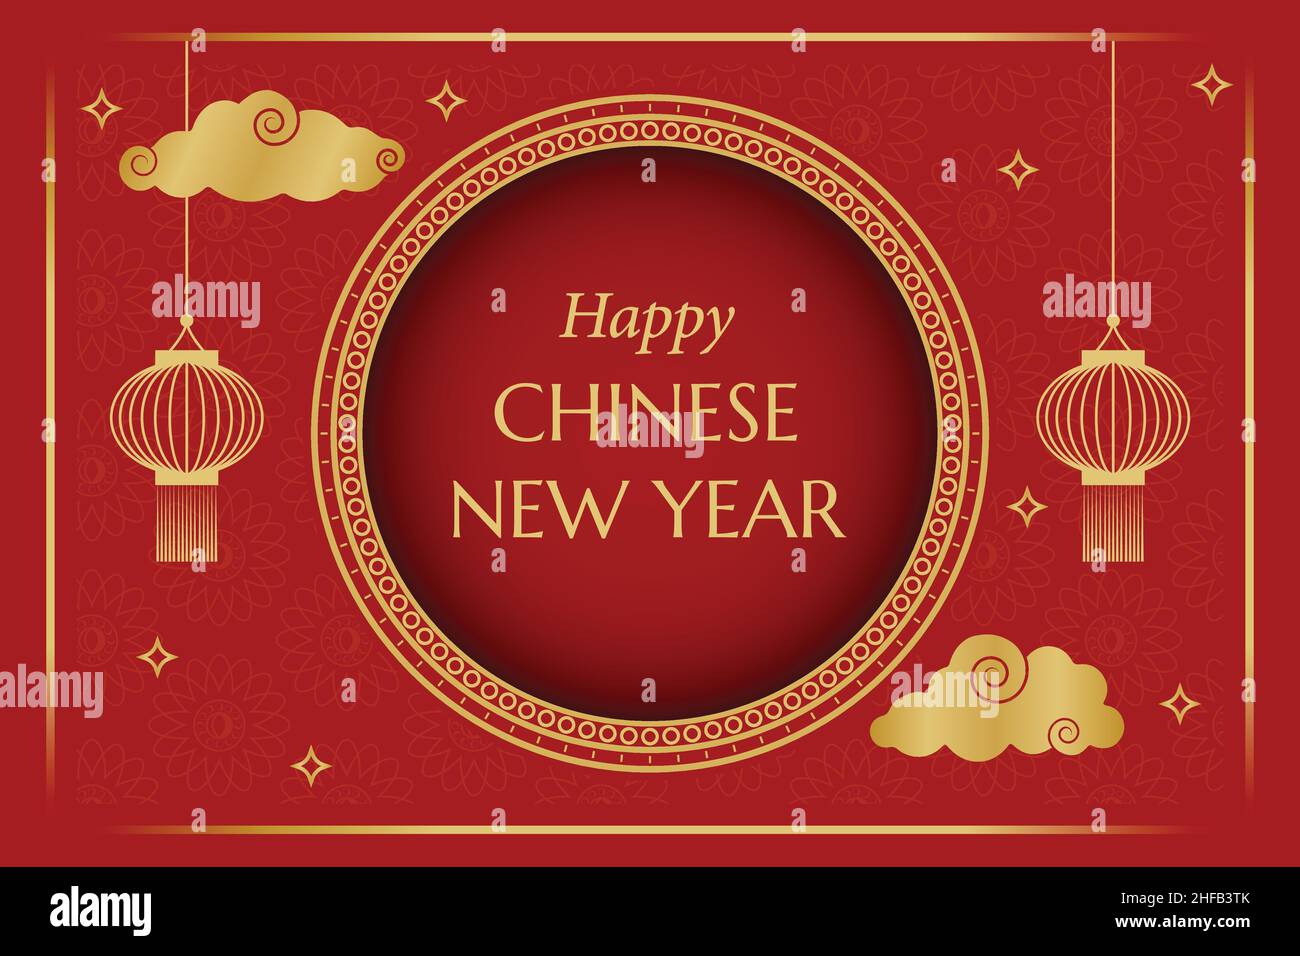 Joyeux nouvel an chinois papier peint traditionnel chinois doré rouge cadre accueil avec lanternes et nuages Illustration de Vecteur